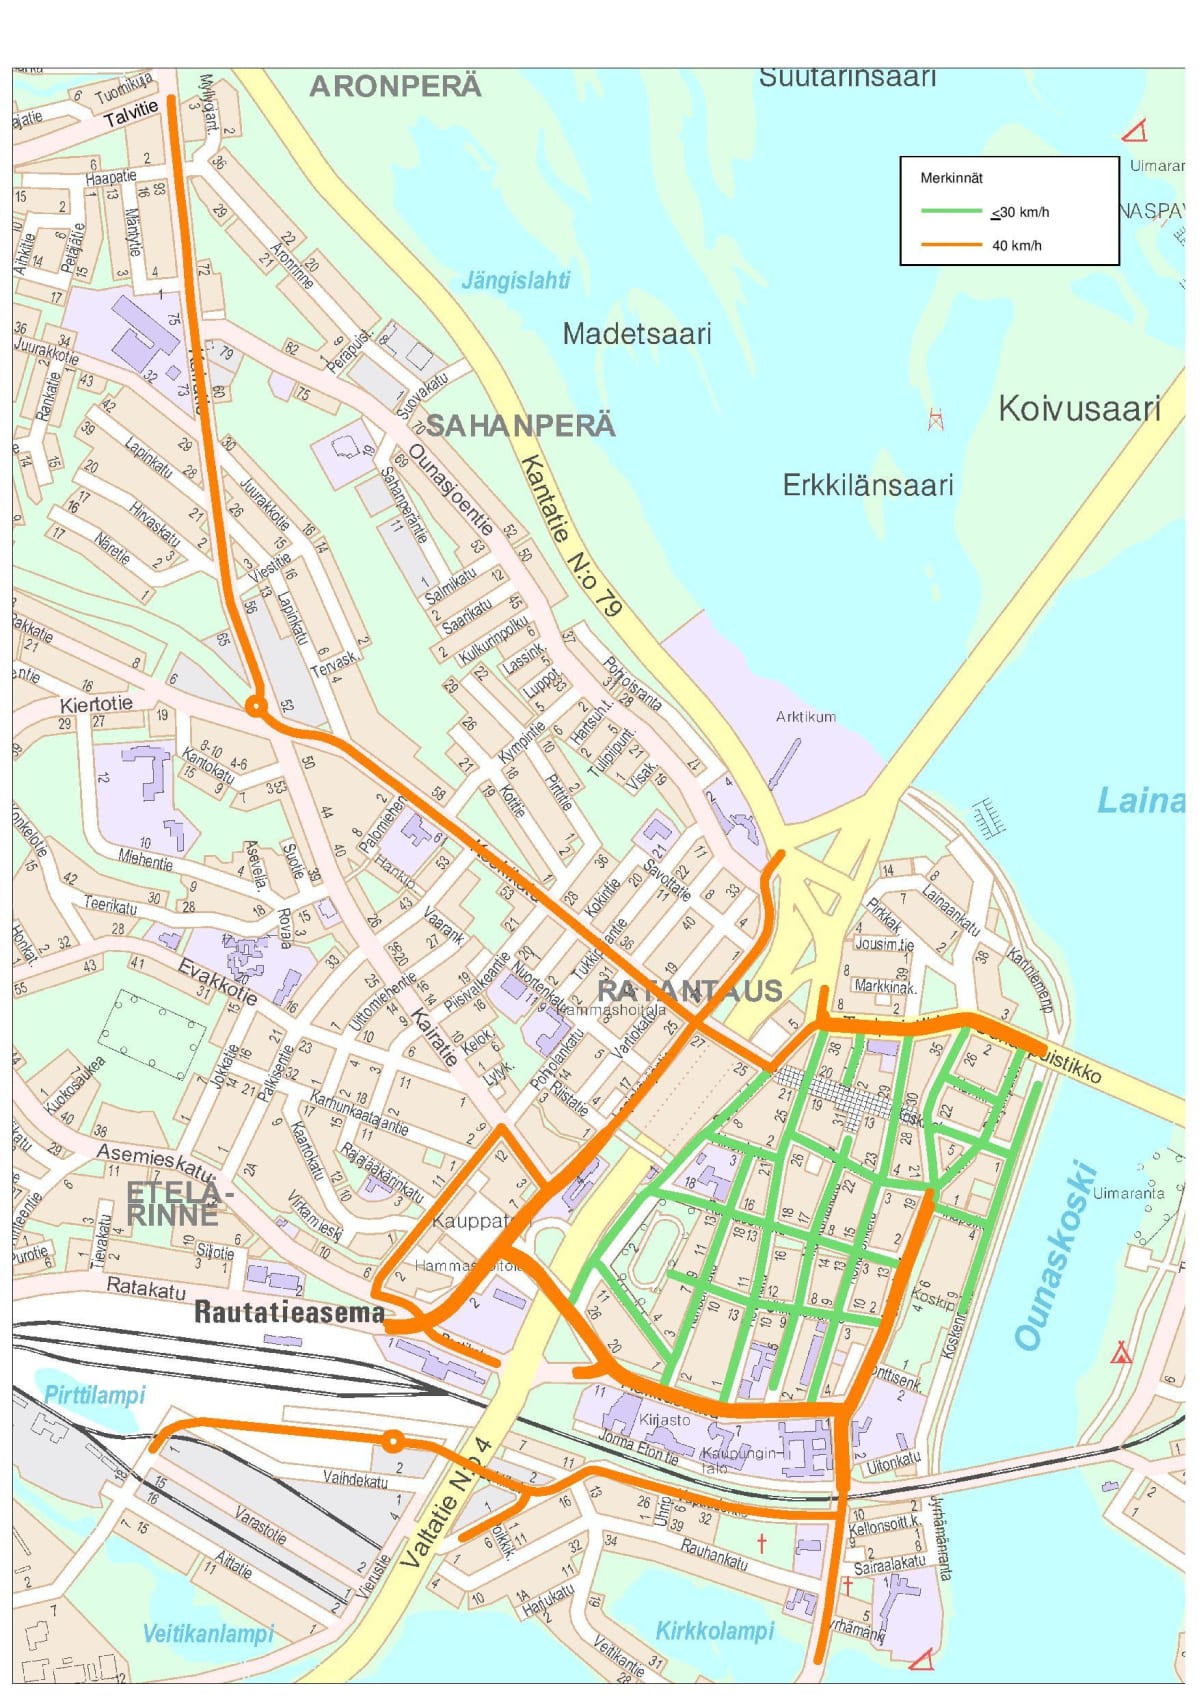 rovaniemi kartta Nopeusrajoitukset laskevat Rovaniemen ydinkeskustassa 30 